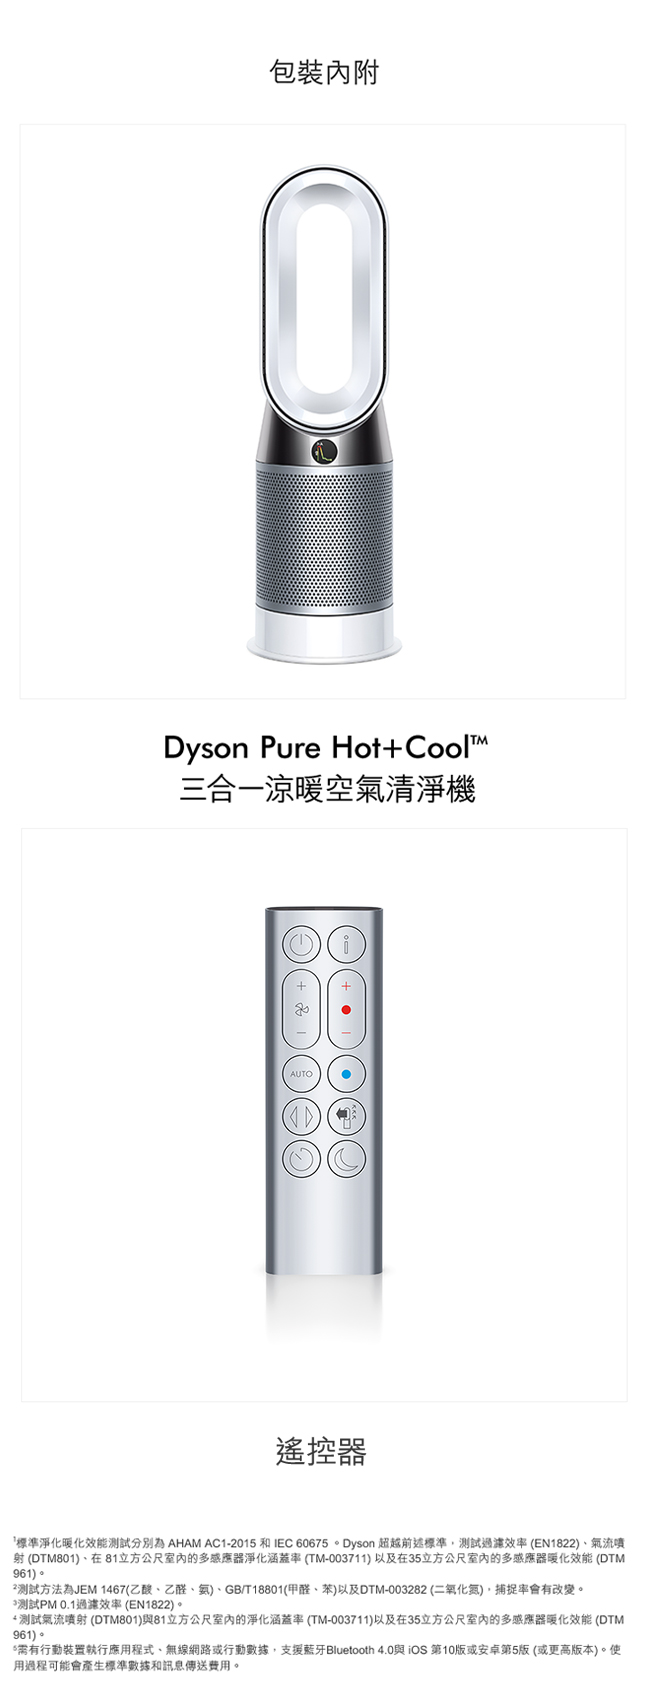 福利品 Dyson 戴森 Pure Hot+Cool 三合一涼暖空氣清淨機 HP04 時尚白